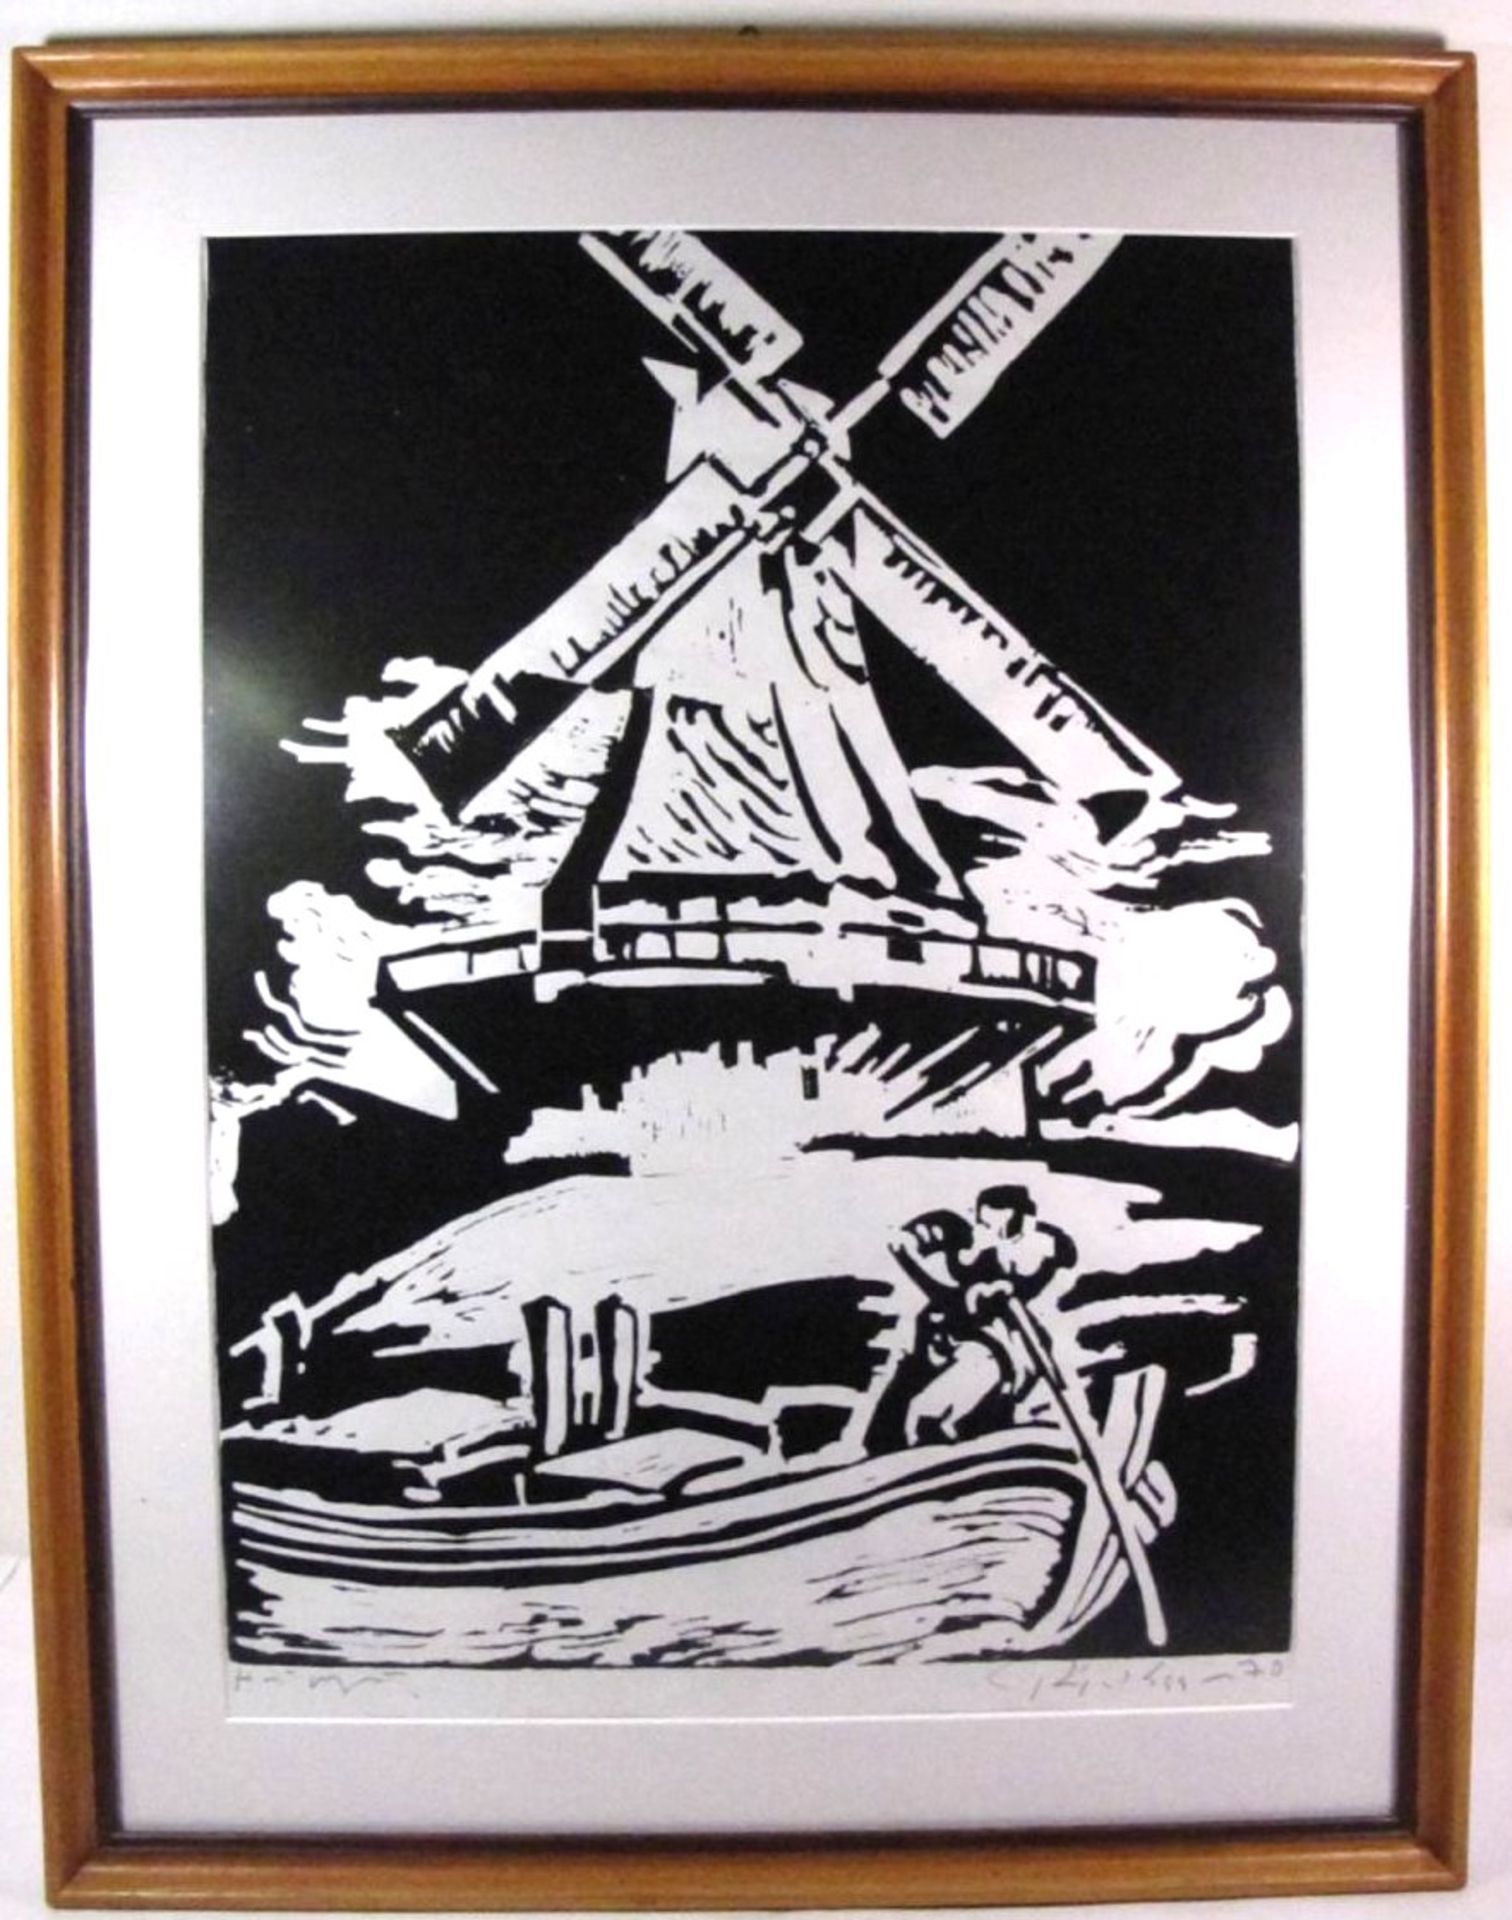 unleserl.signierter Holzschnitt "Mühle", gerahmt/Glas, RG 69 x 53cm. - Bild 2 aus 4